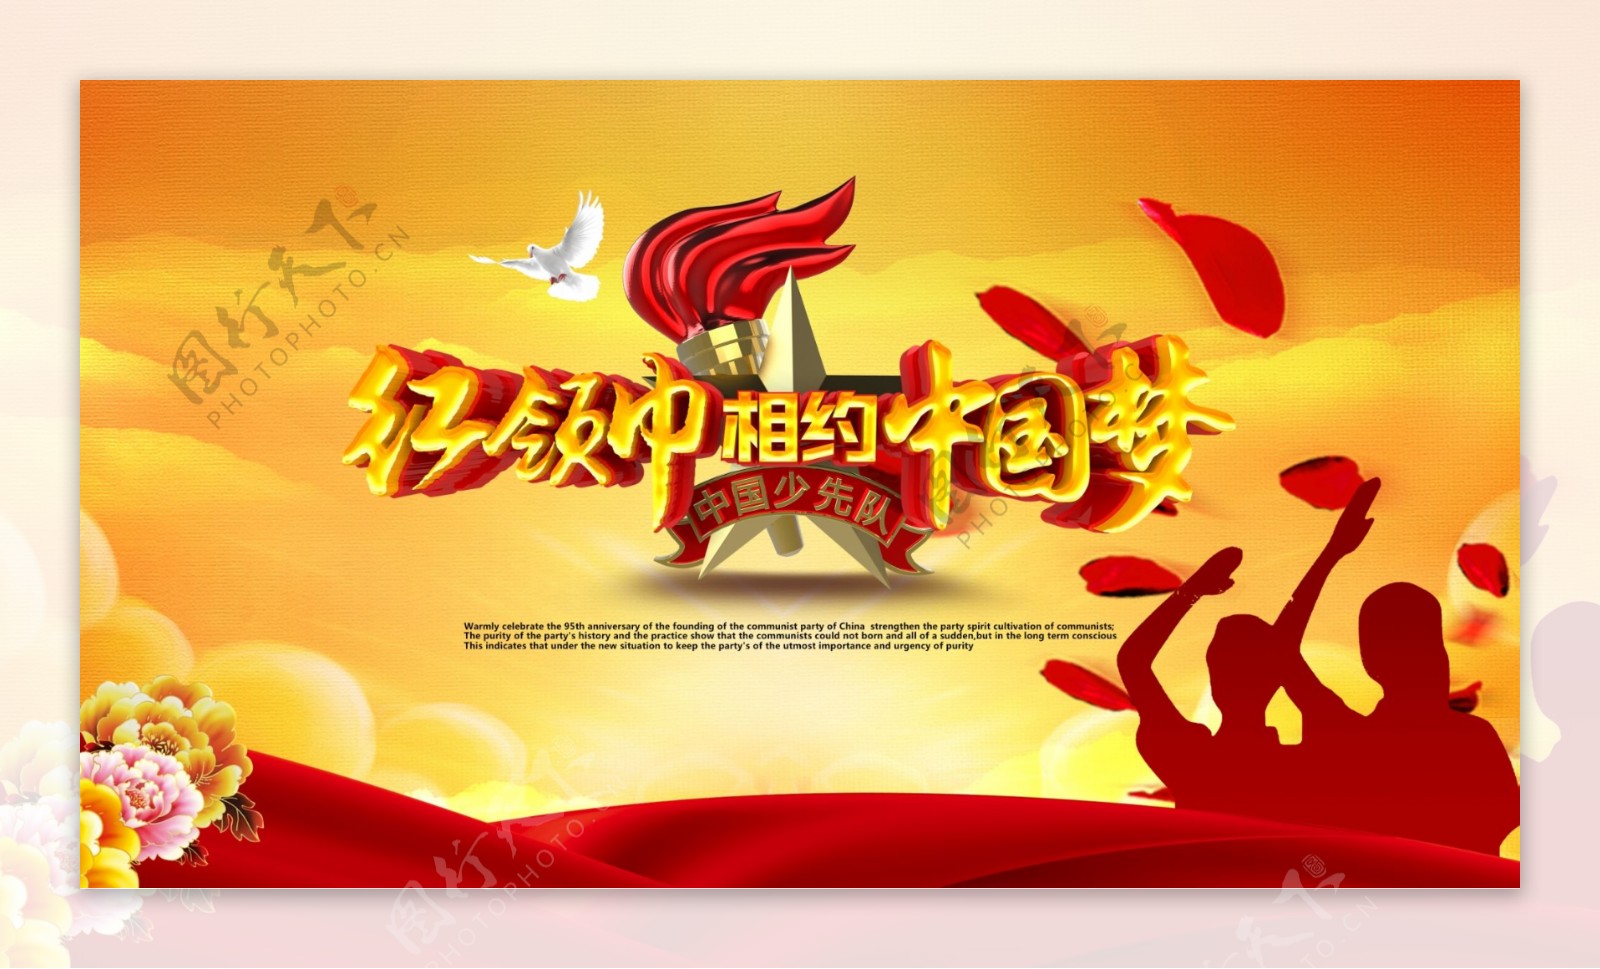 红领巾相约中国梦 - 案例上传 - 活动 - 未来网红领巾集结号